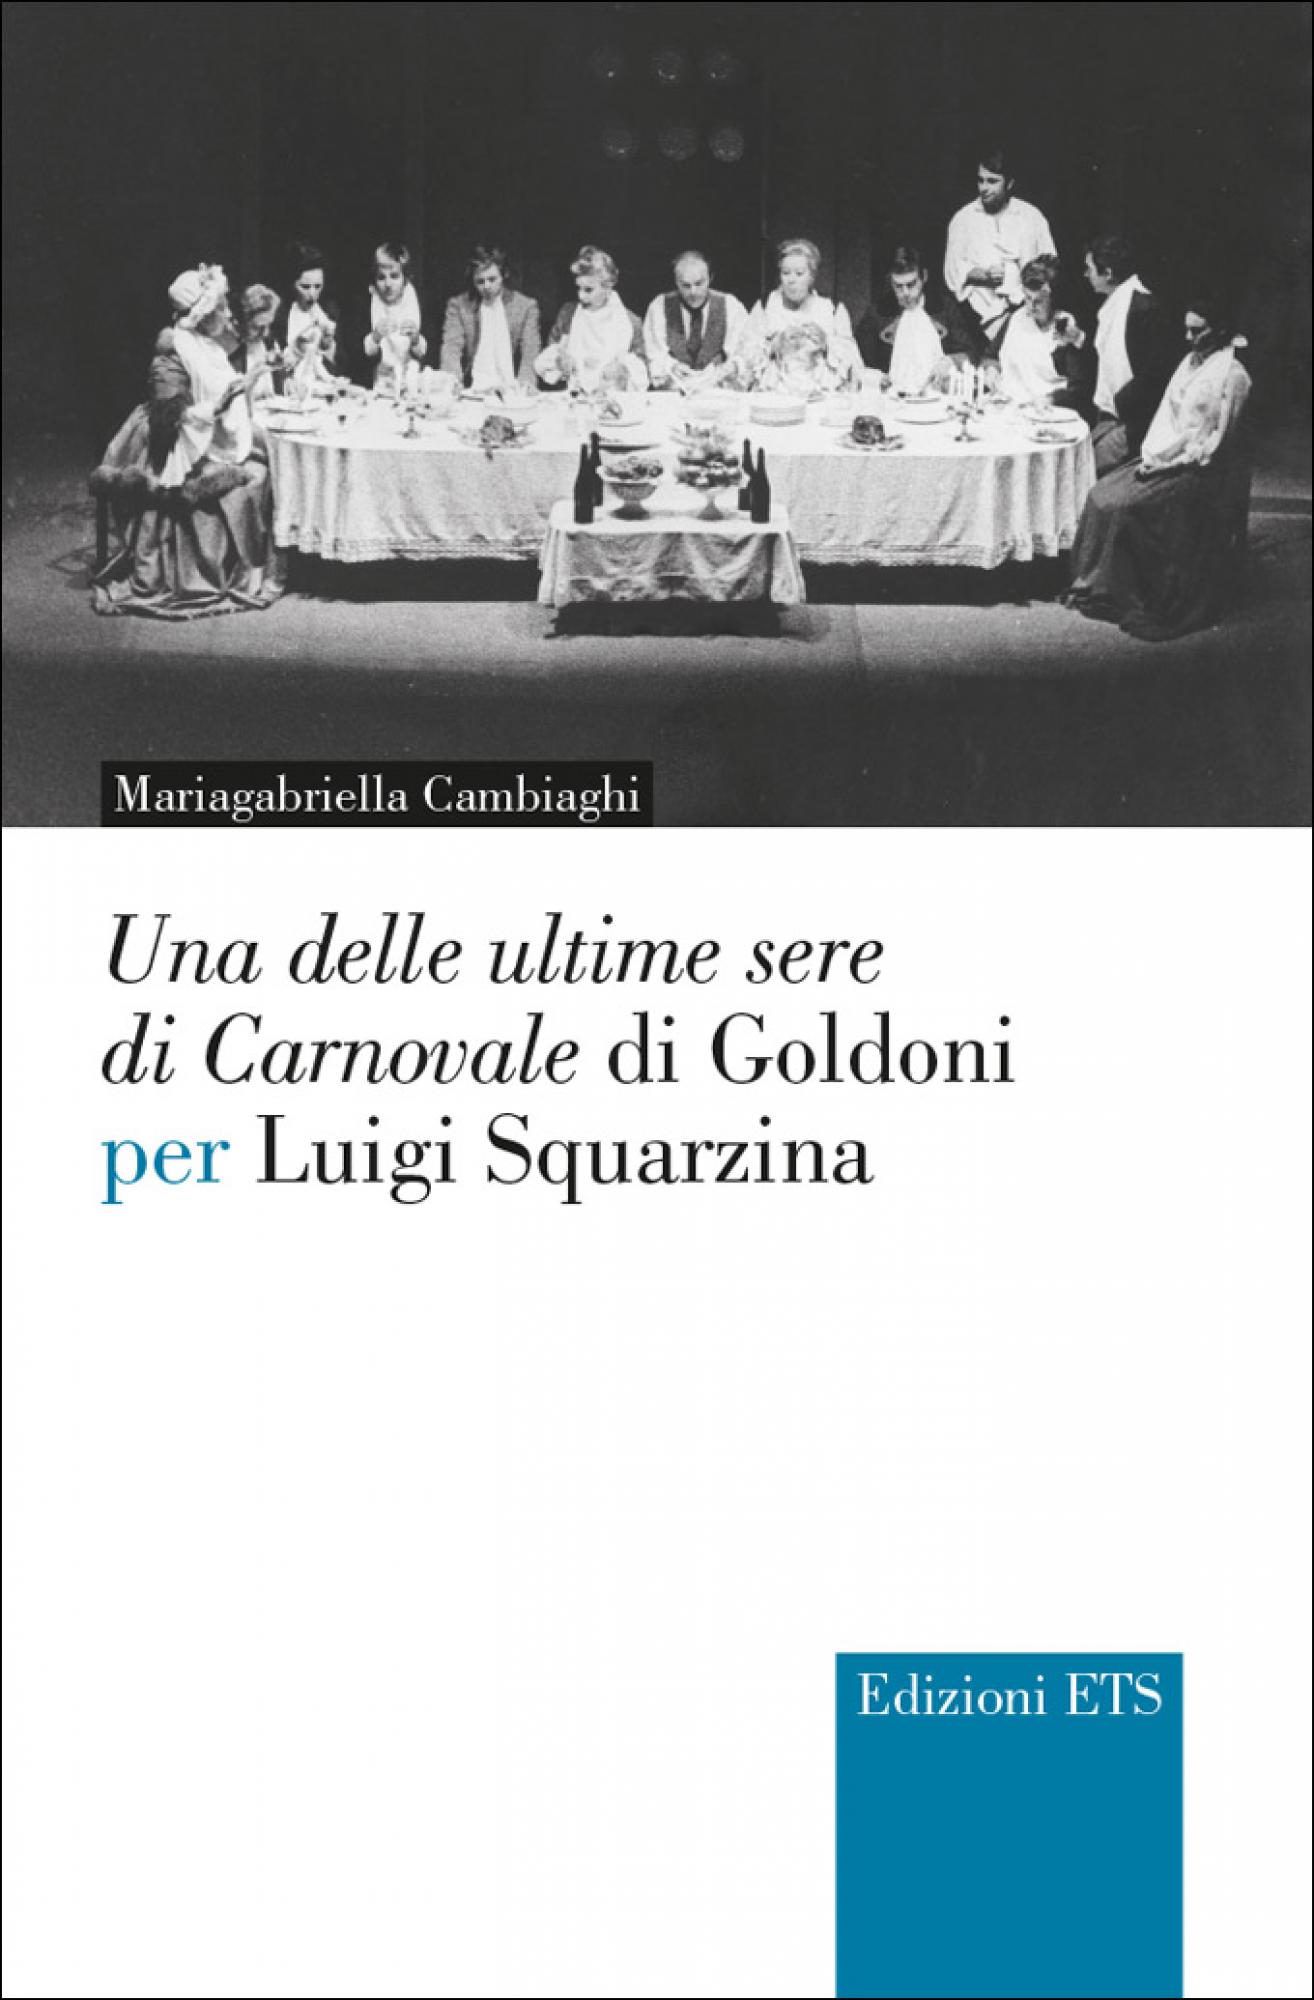 “Una delle ultime sere di Carnovale” di Goldoni per Luigi Squarzina